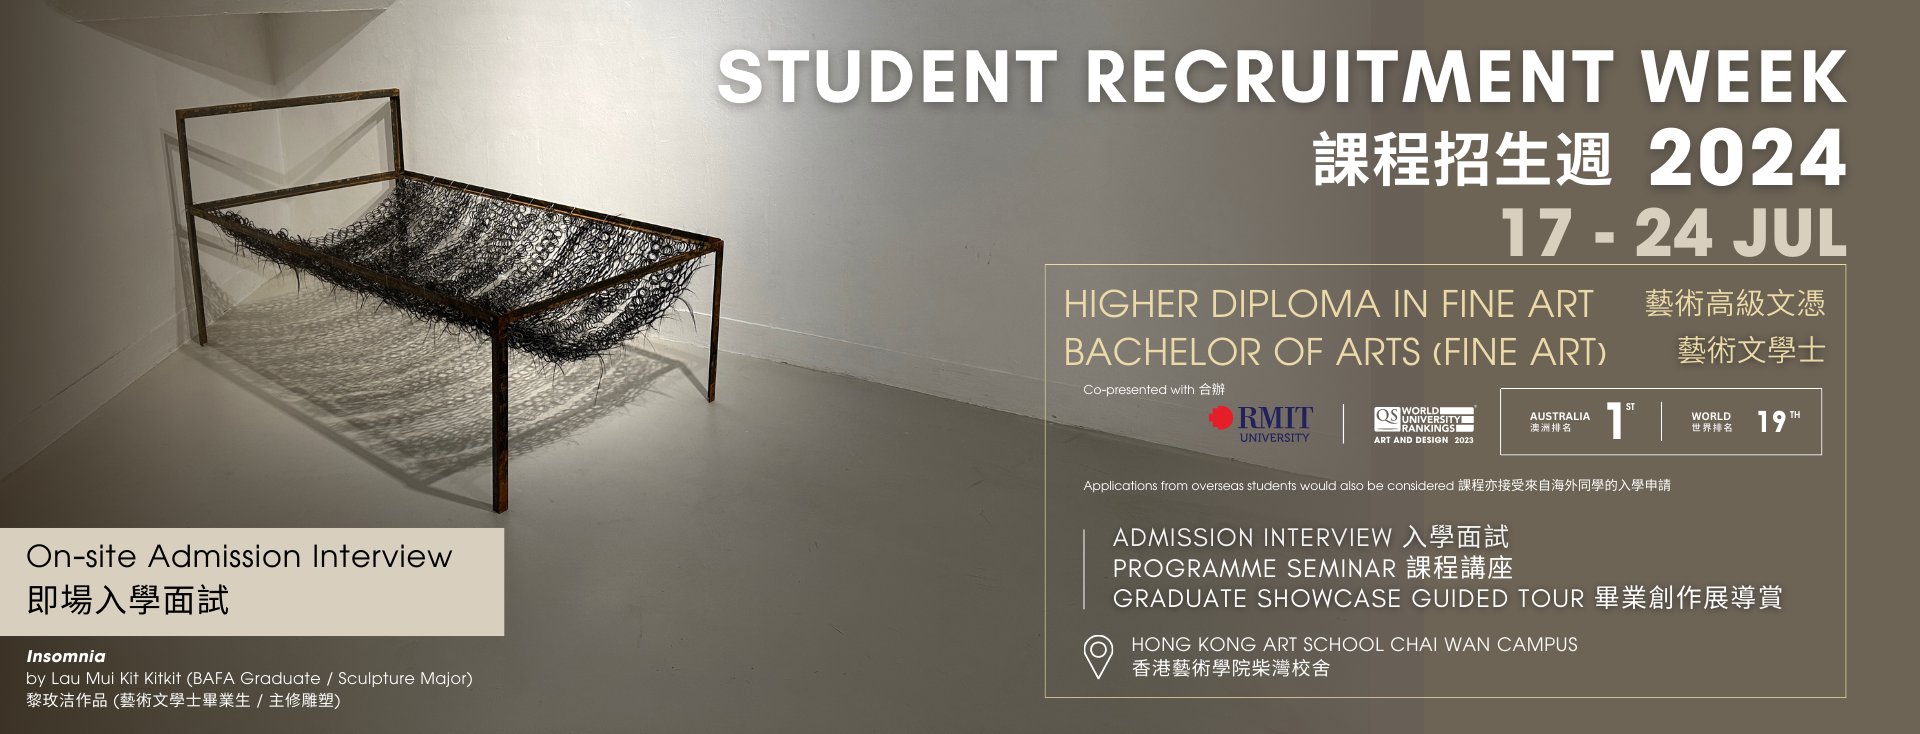 Hong Kong Art School Recruitment Week 2024